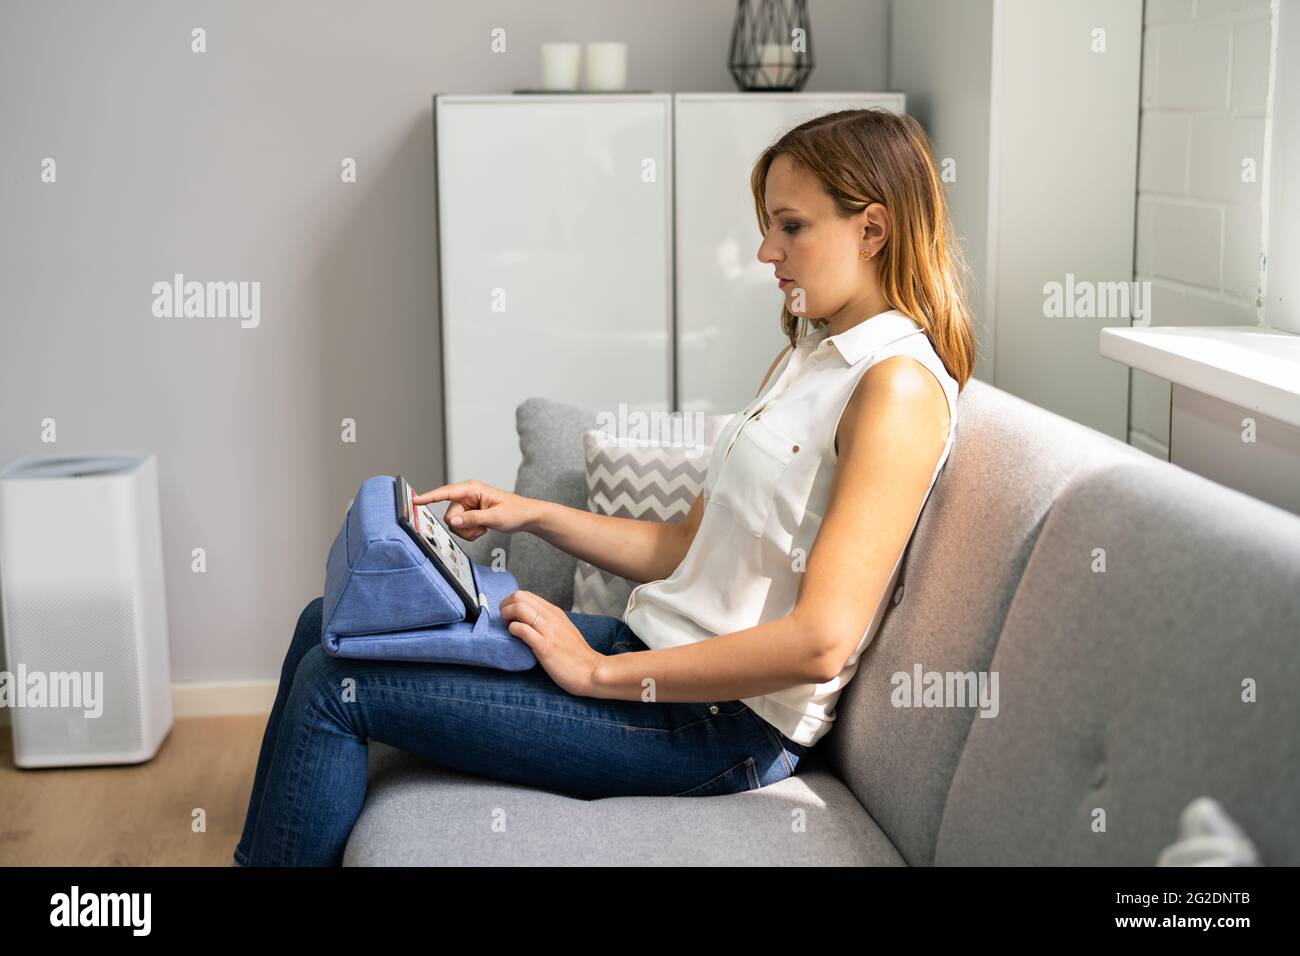 Frau Vermeiden Nackenschmerzen Sitzen Mit Guter Haltung Stockfoto